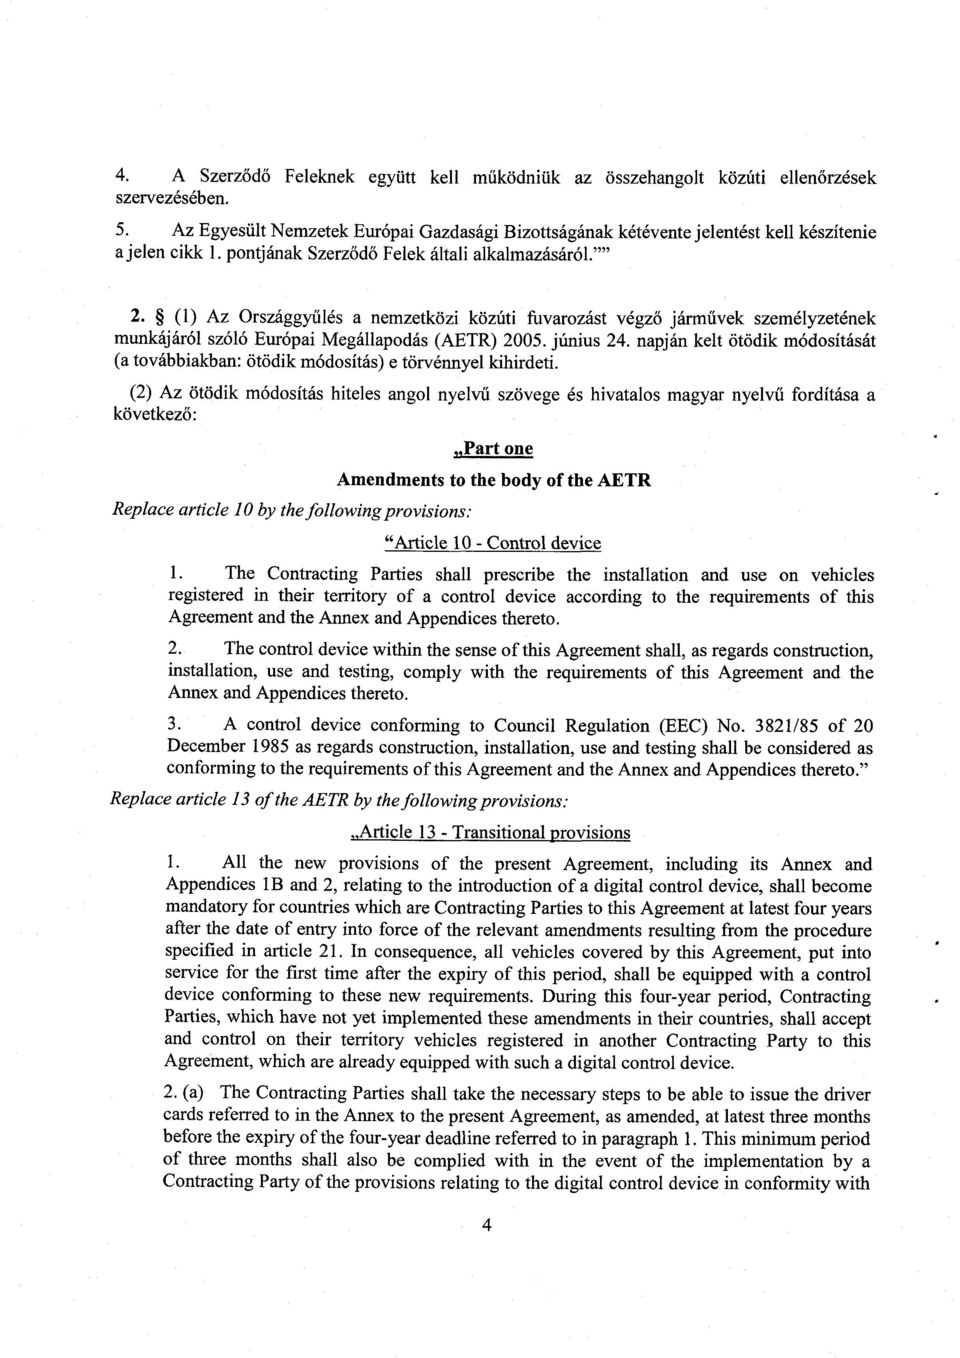 (1) Az Országgyűlés a nemzetközi közúti fuvarozást végz ő járm űvek személyzetének munkájáról szóló Európai Megállapodás (AETR) 2005. június 24.